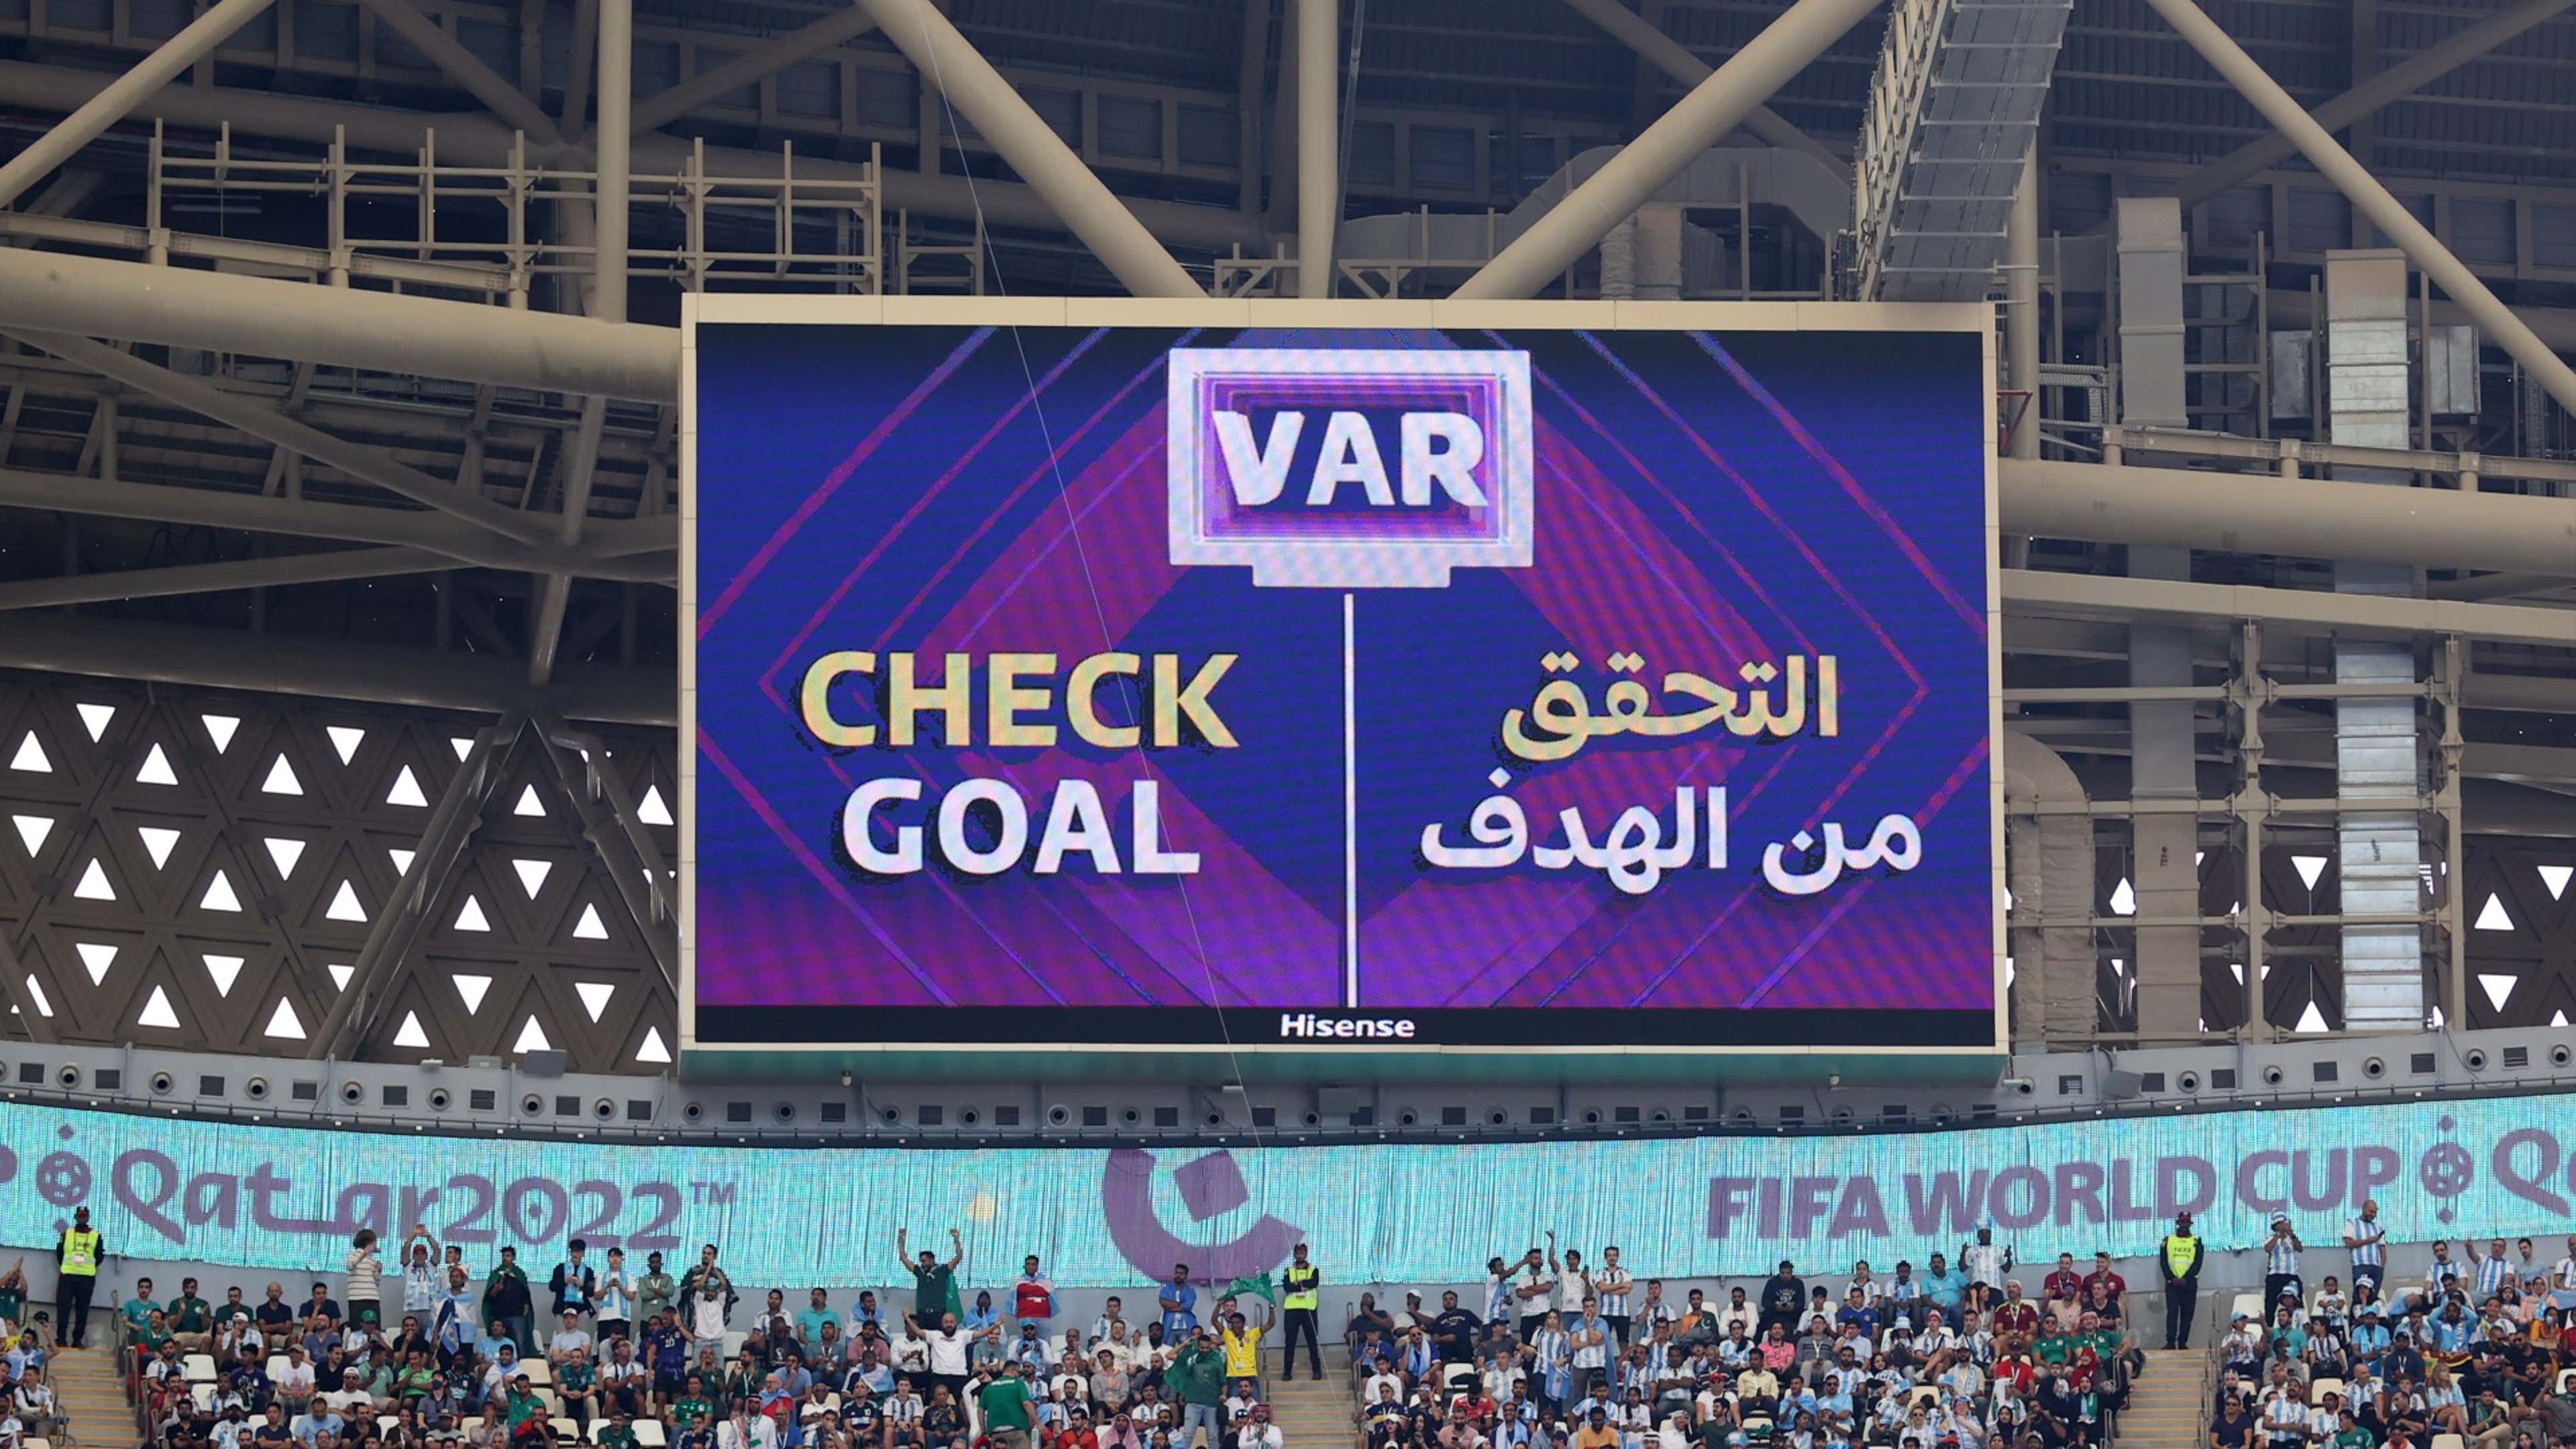 VAR World Cup 2022 Qatar